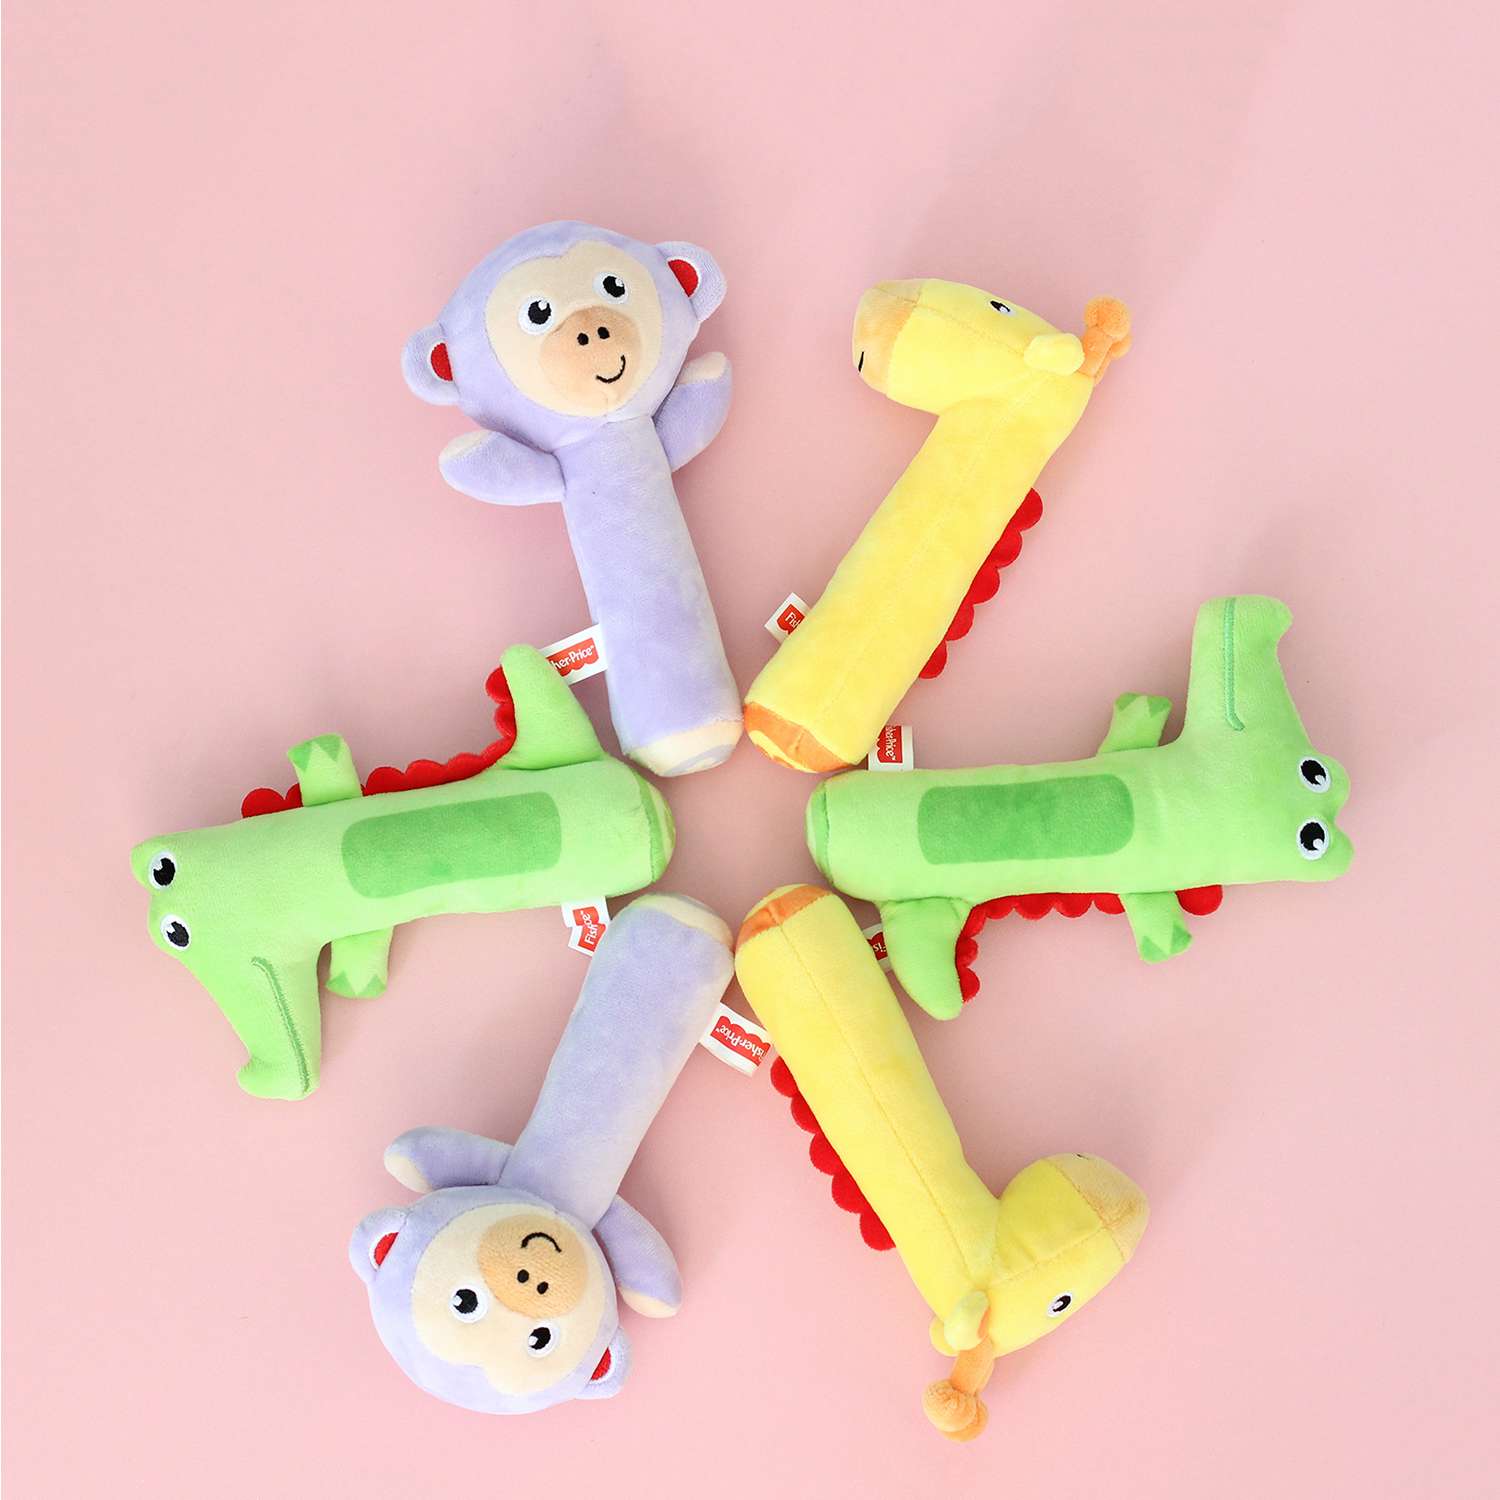 Погремушка-пищалка Fisher Price Крокодильчик развивающая мягкая игрушка для детей 0+ - фото 5